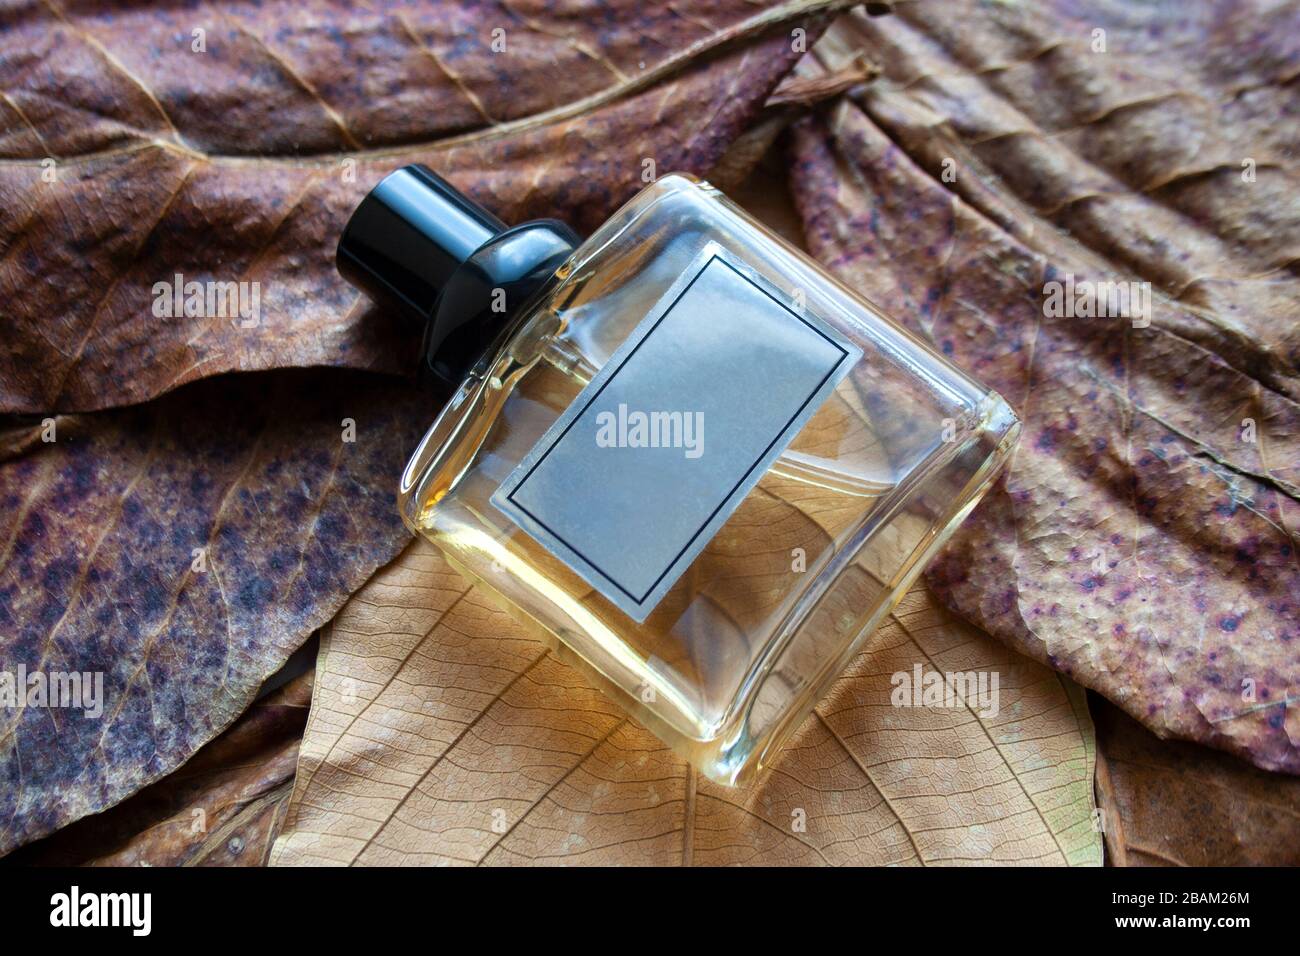 Rectangular glass perfume bottle on dry bronze leaves Stock Photo